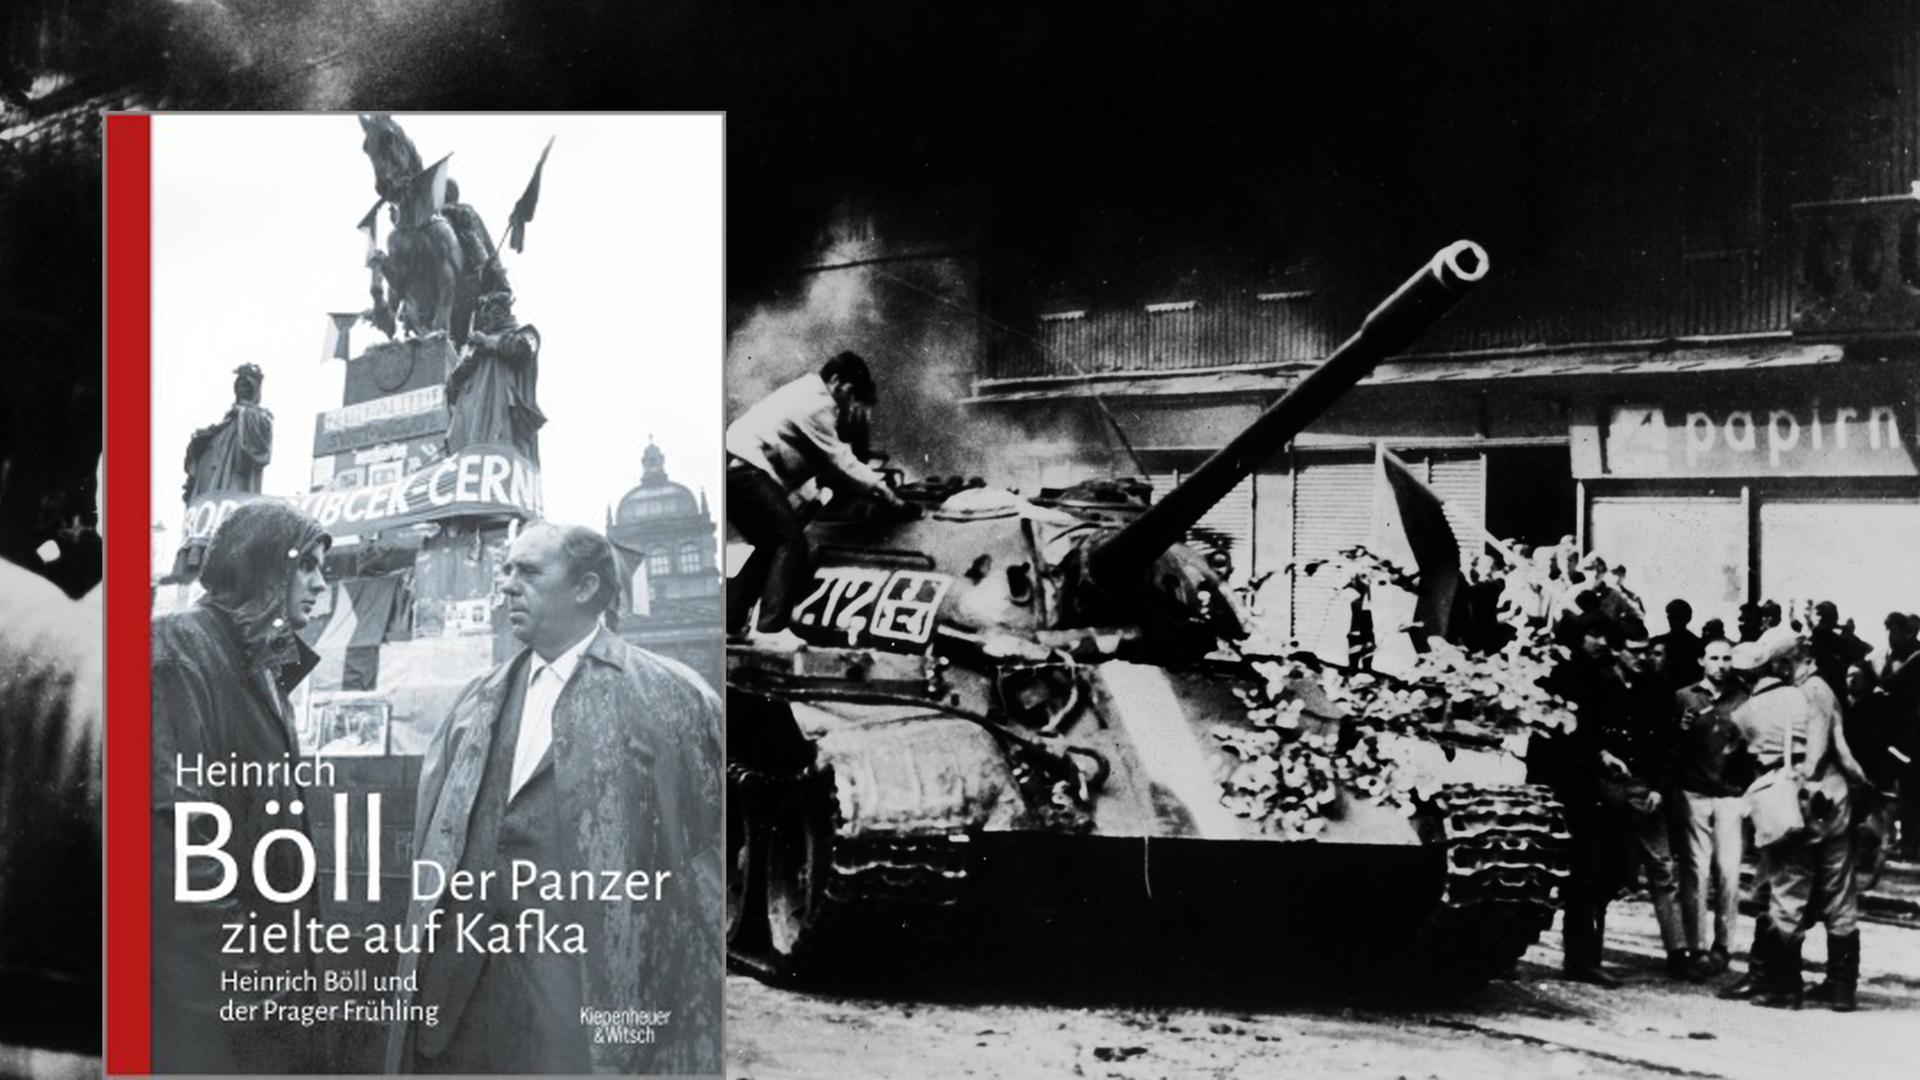 Cover von "Der Panzer zeigte auf Kafka" von Heinrich Böll, im Hintergrund ein sowjetischer Panzer 1968 in Prag.